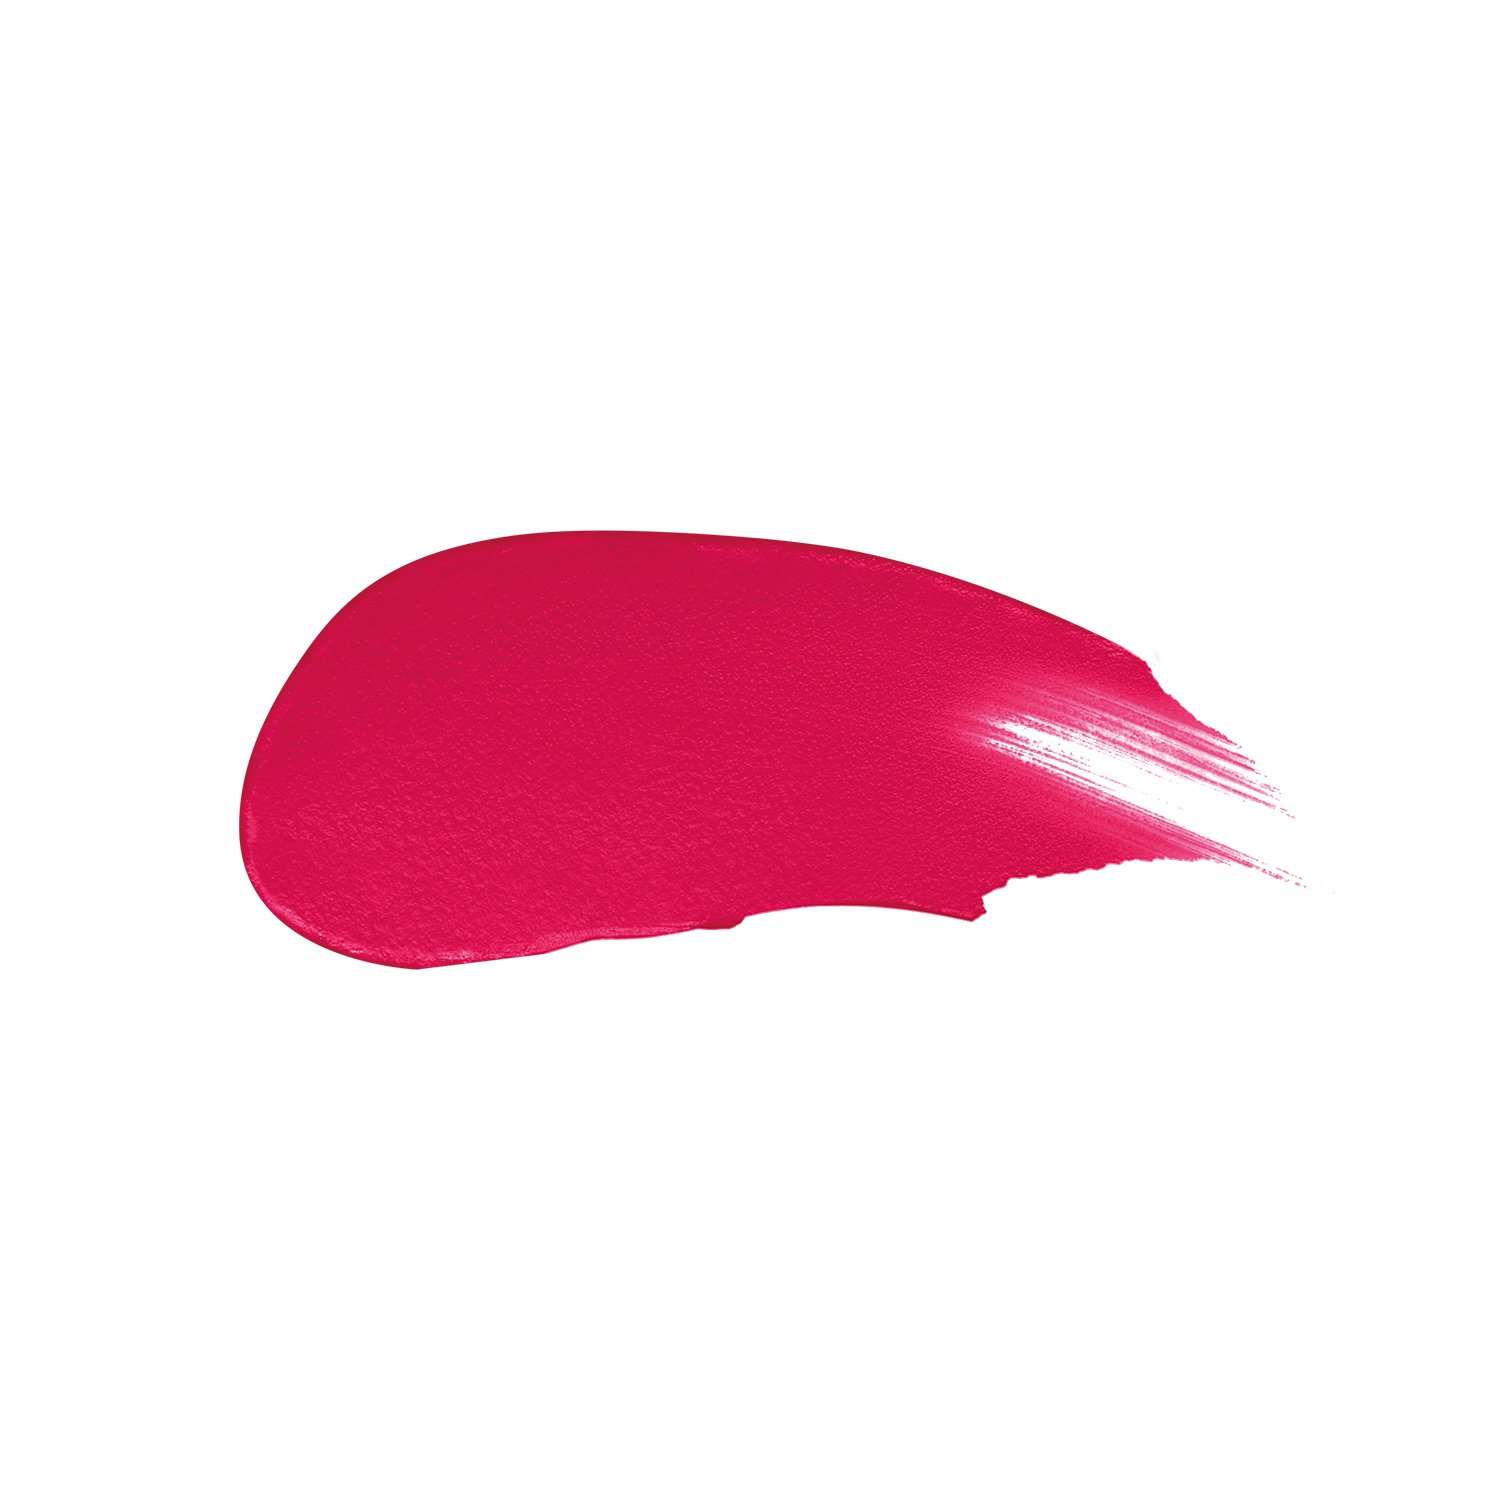 Рідка помада для губ Max Factor Colour Elixi Matte Soft, відтінок 025 (Raspbrry Haze), 4 мл (8000019533136) - фото 2